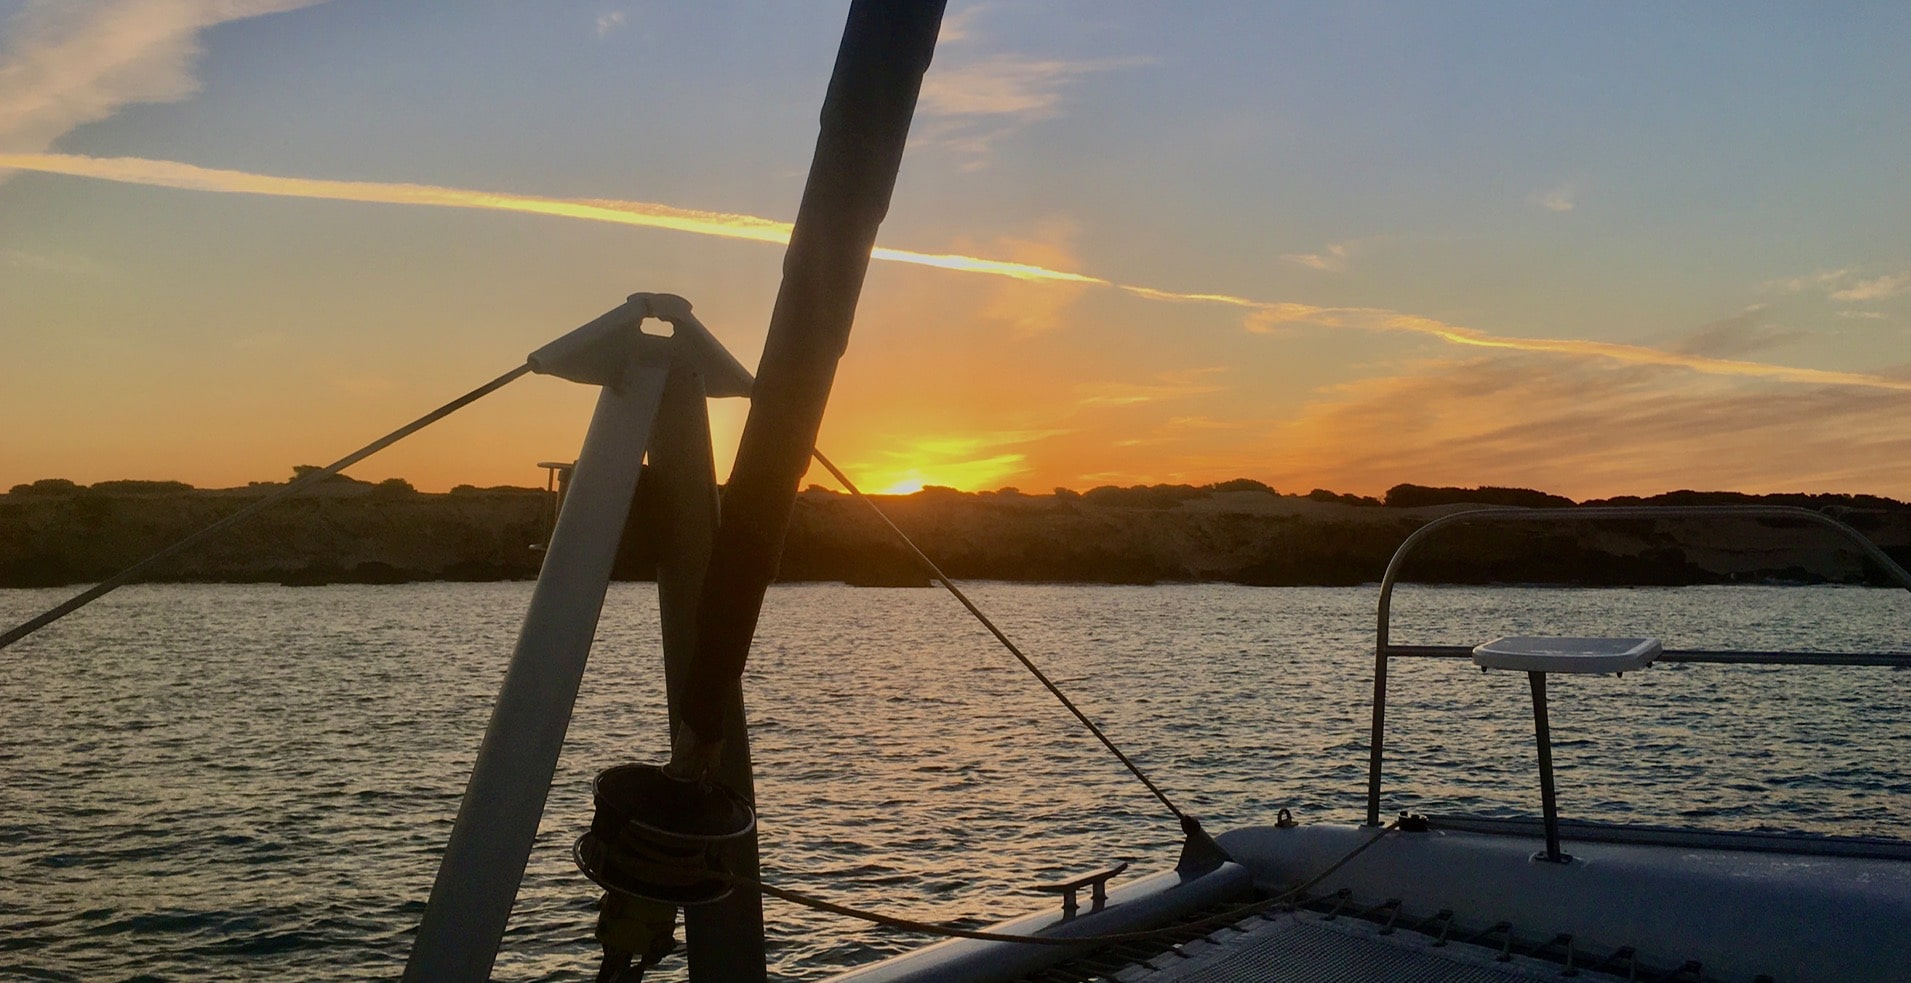 Louer catamaran à Ibiza, coucher de soleil à Talamanca.